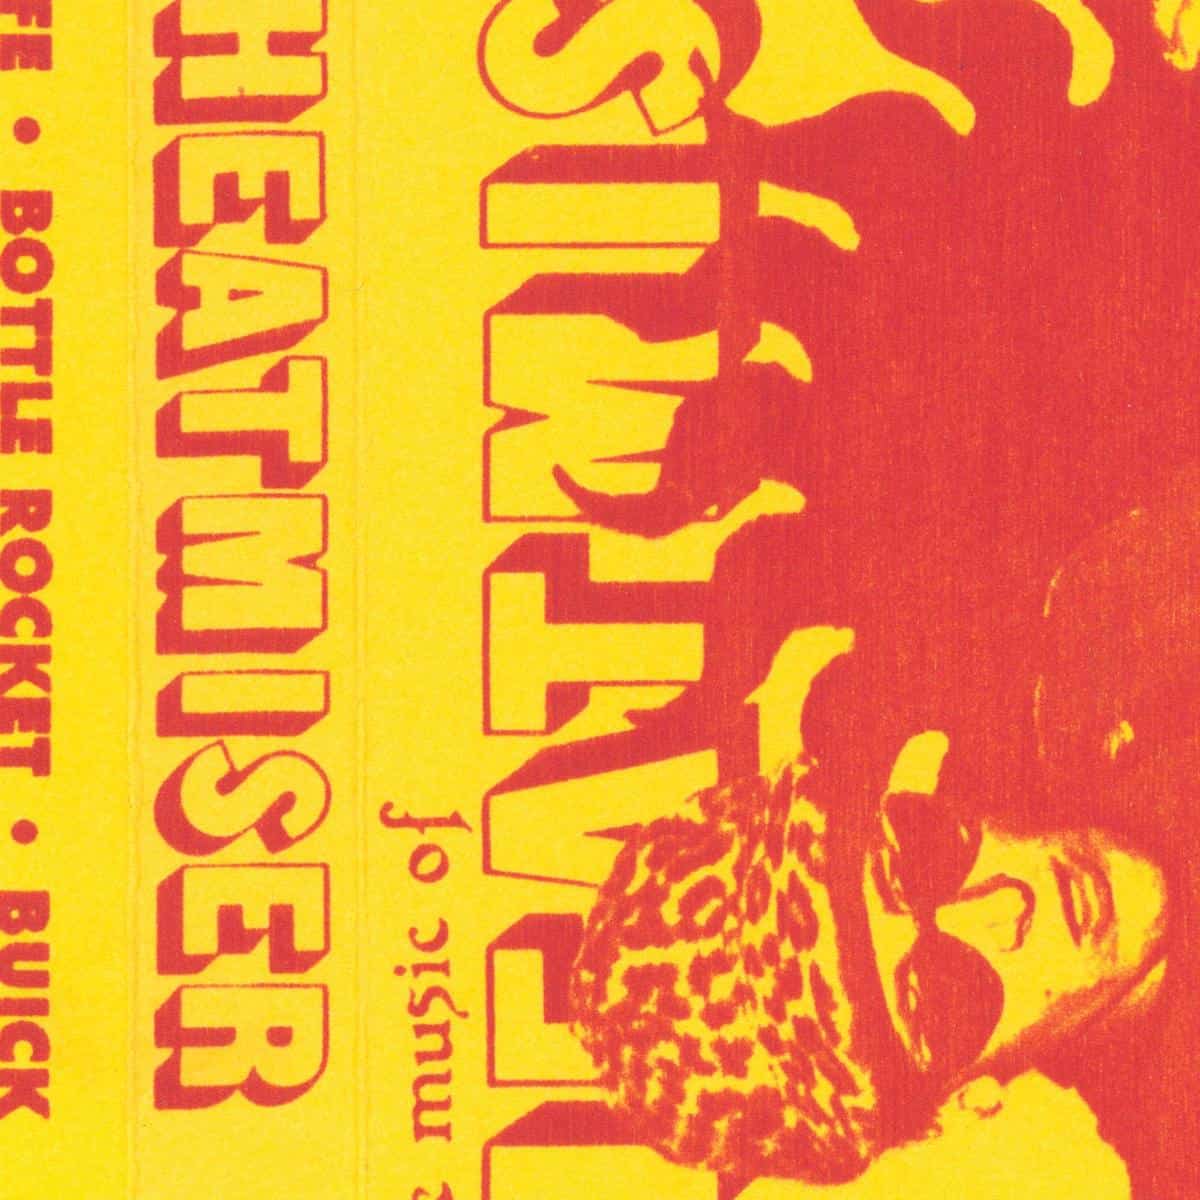 HEATMISER - The Music of Heatmiser - 2LP - Red & Yellow Splatter Vinyl [OCT 6]